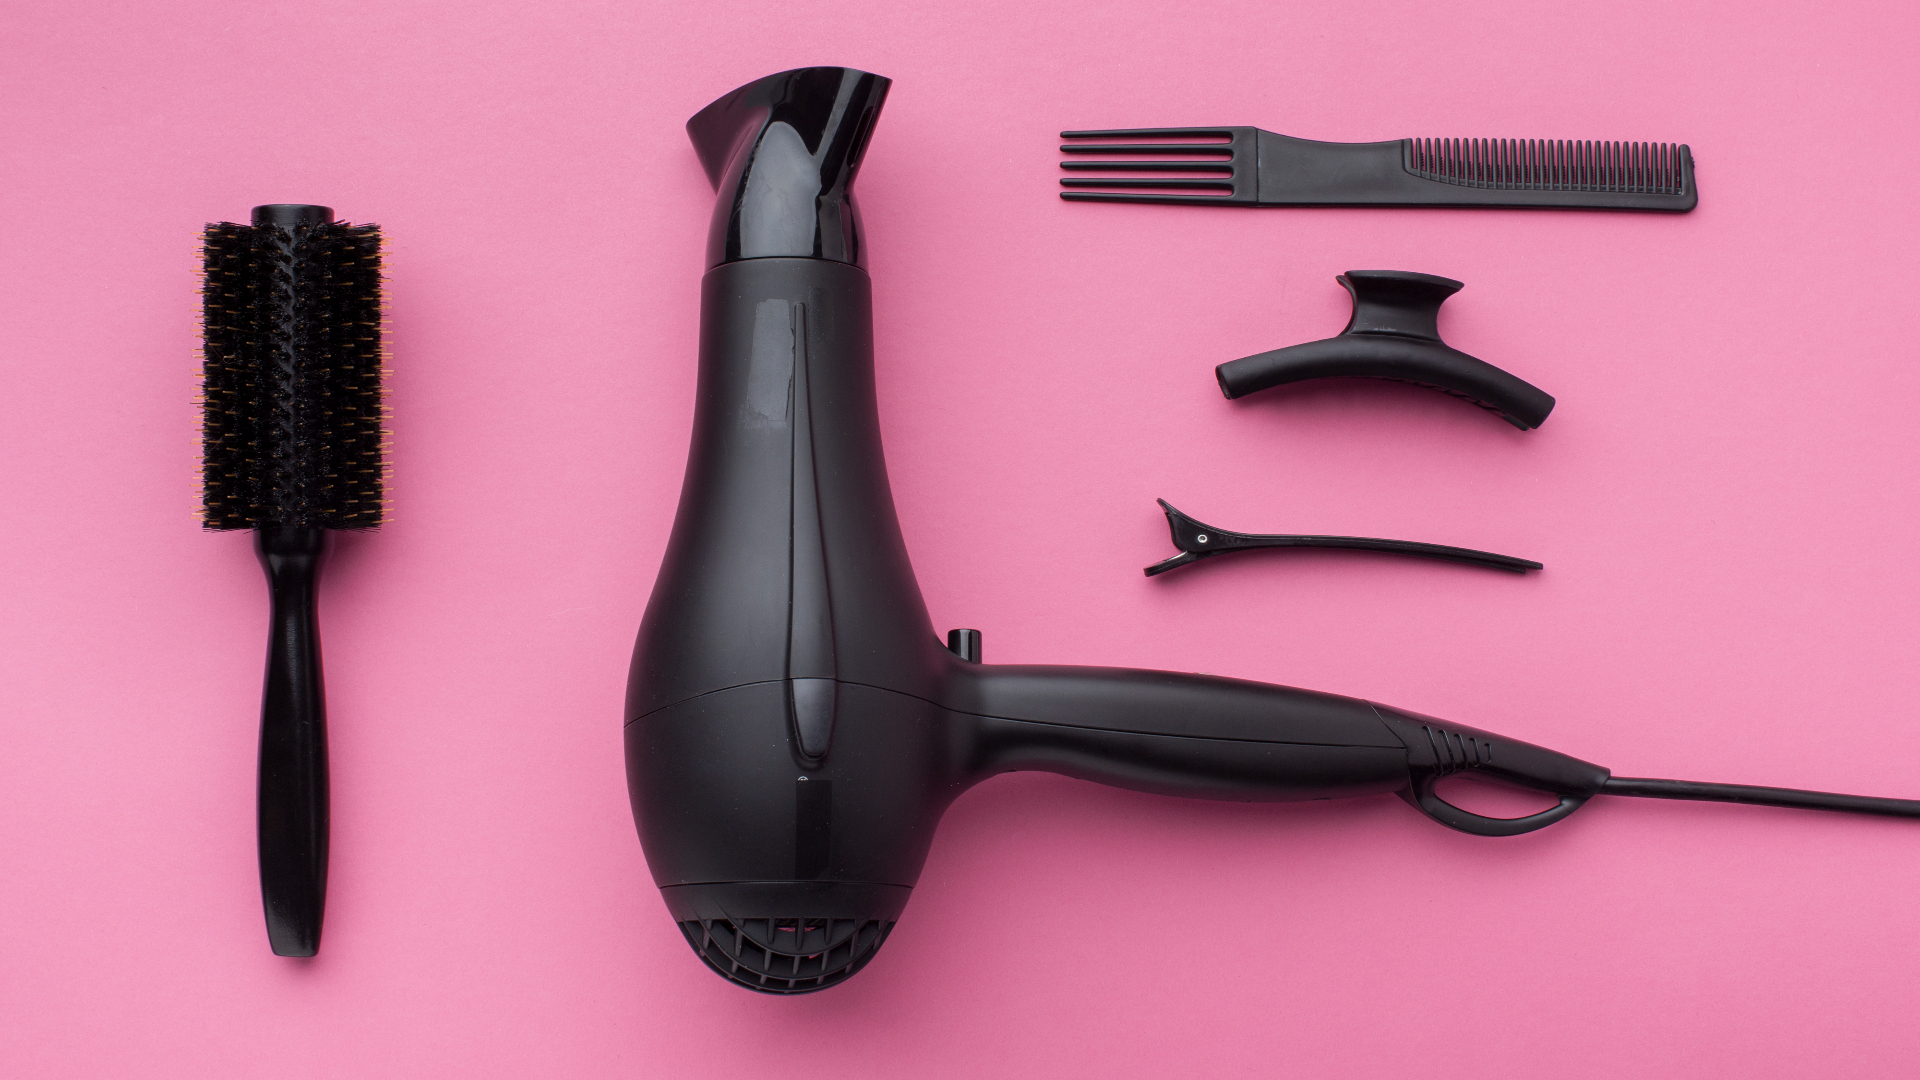 Foto de capa do artigo "Secador de cabelo: tipos, como escolher e como usar"